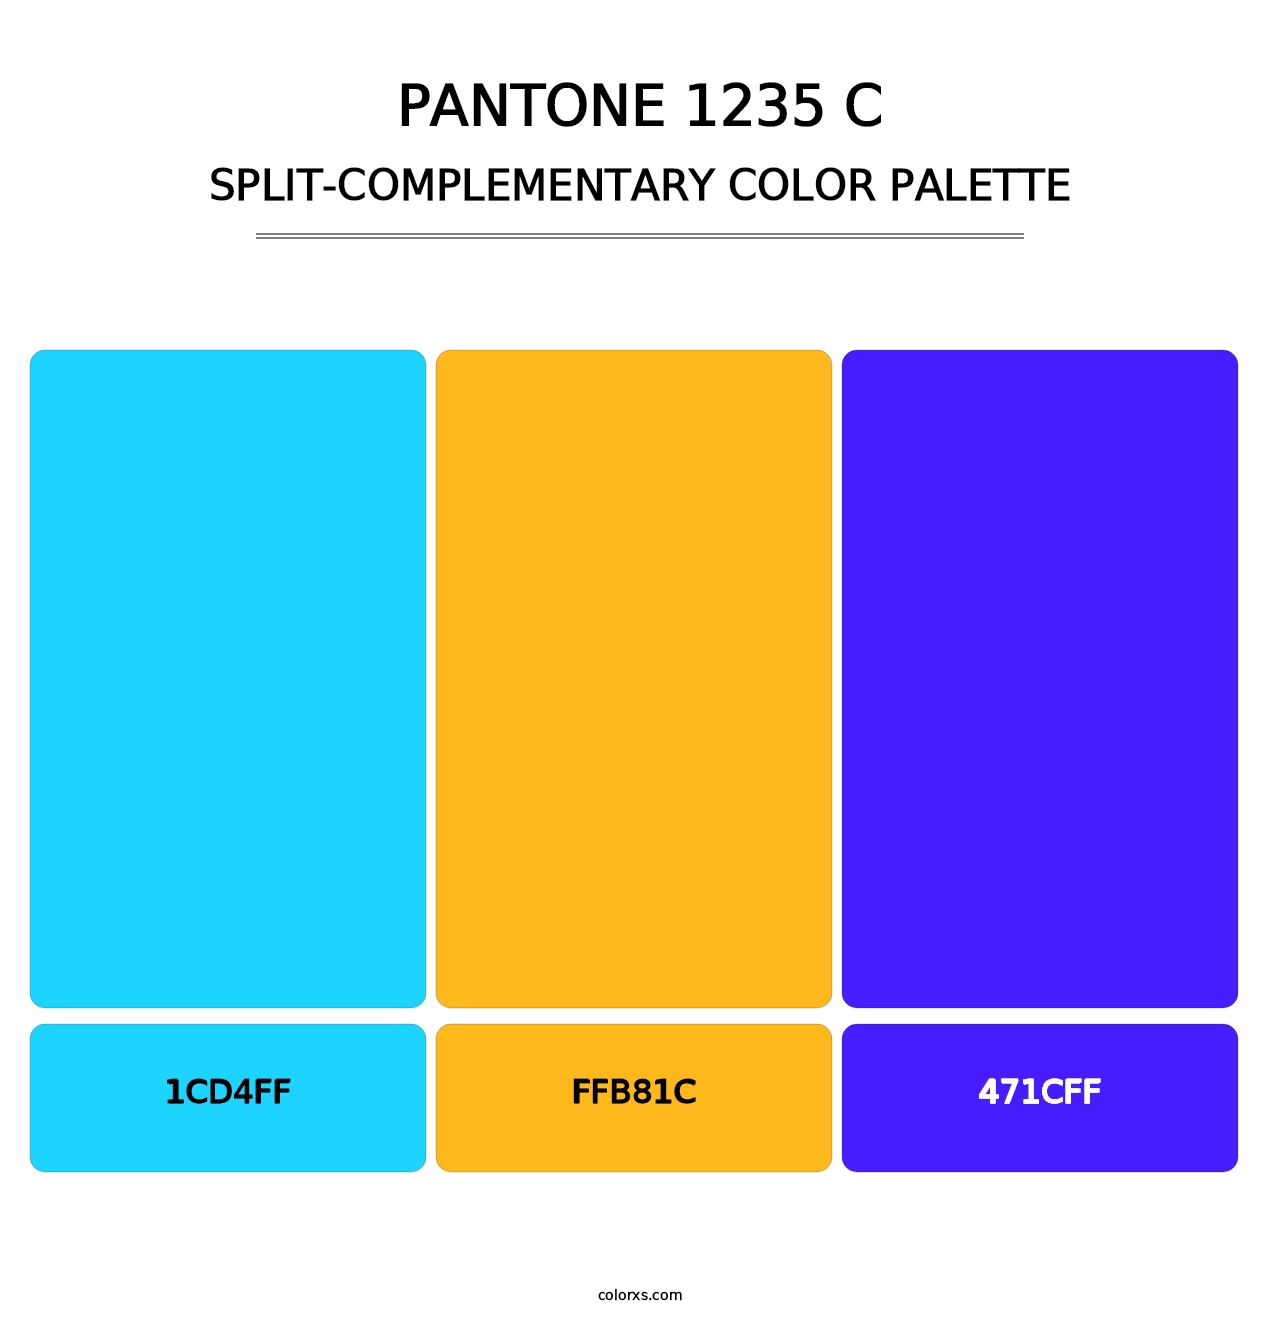 PANTONE 1235 C - Split-Complementary Color Palette